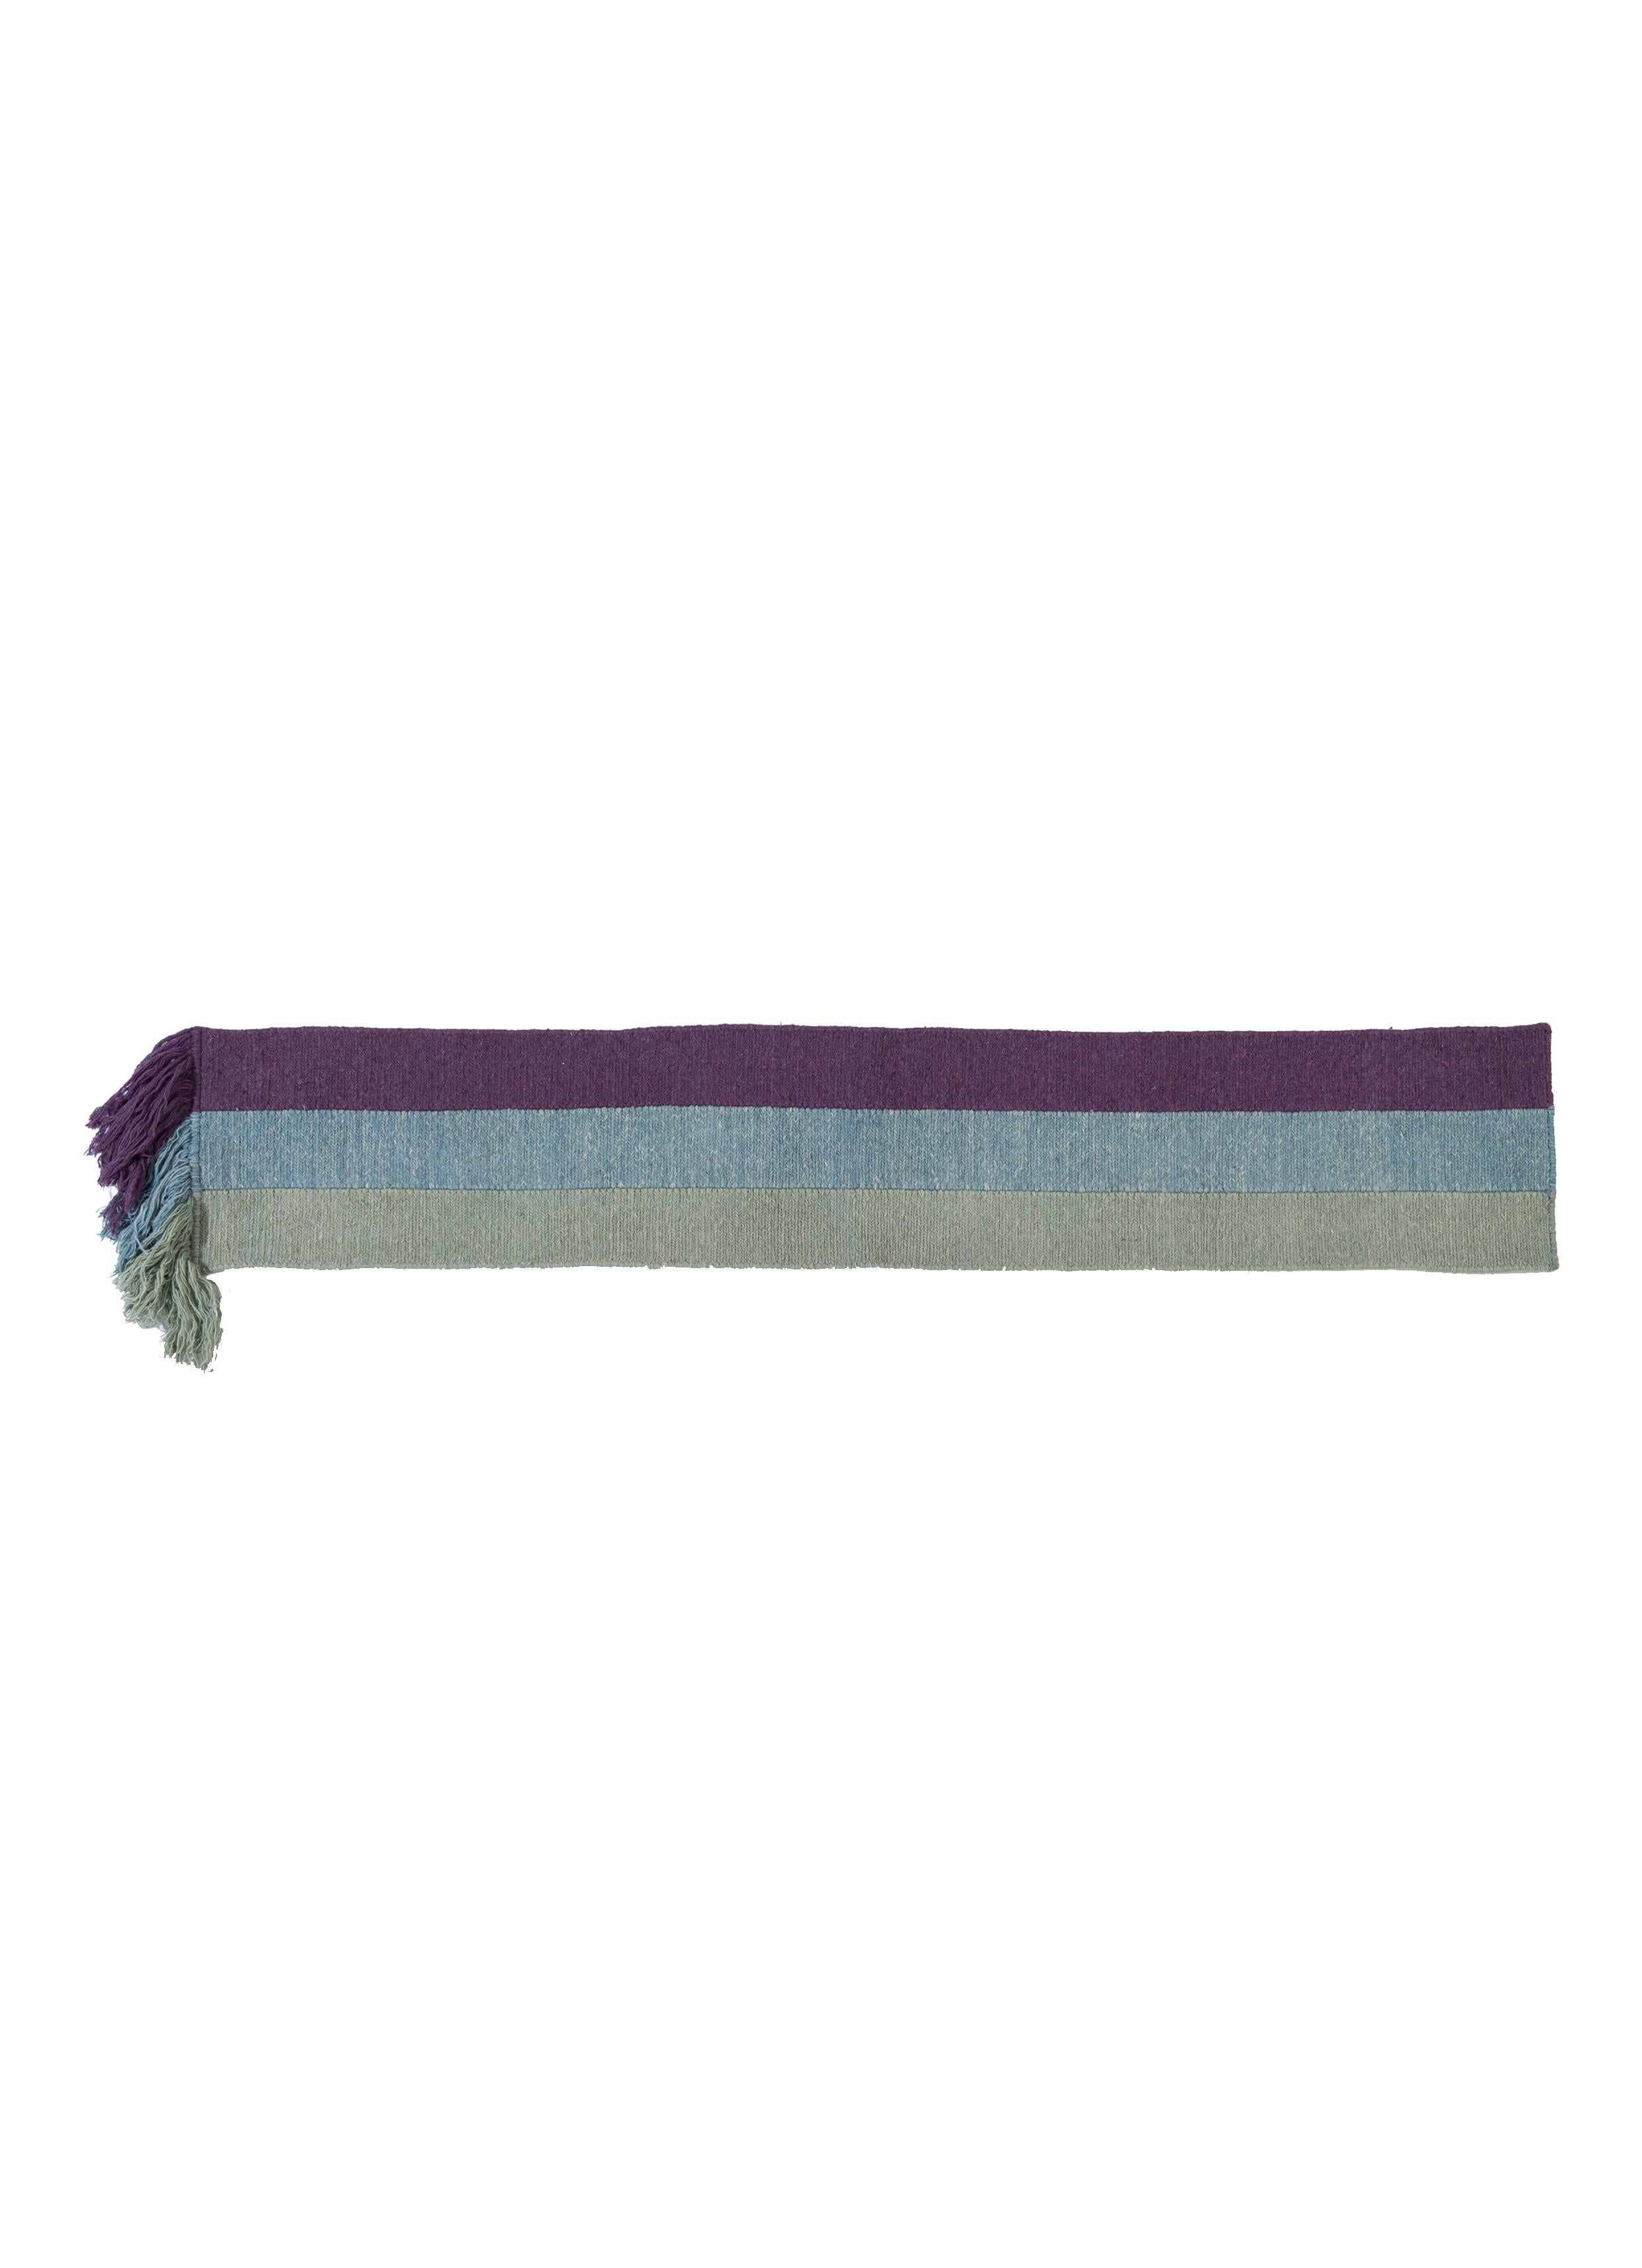 No.267 Tapis noué à la main Freeplay de Lyk Carpet
Dimensions : L 180 x l 30 cm.
Matériaux : 100% laine des hauts plateaux tibétains, laine vierge peignée et filée à la main, laine naturelle teintée dans la masse, 100 nœuds par pouce carré.
Les